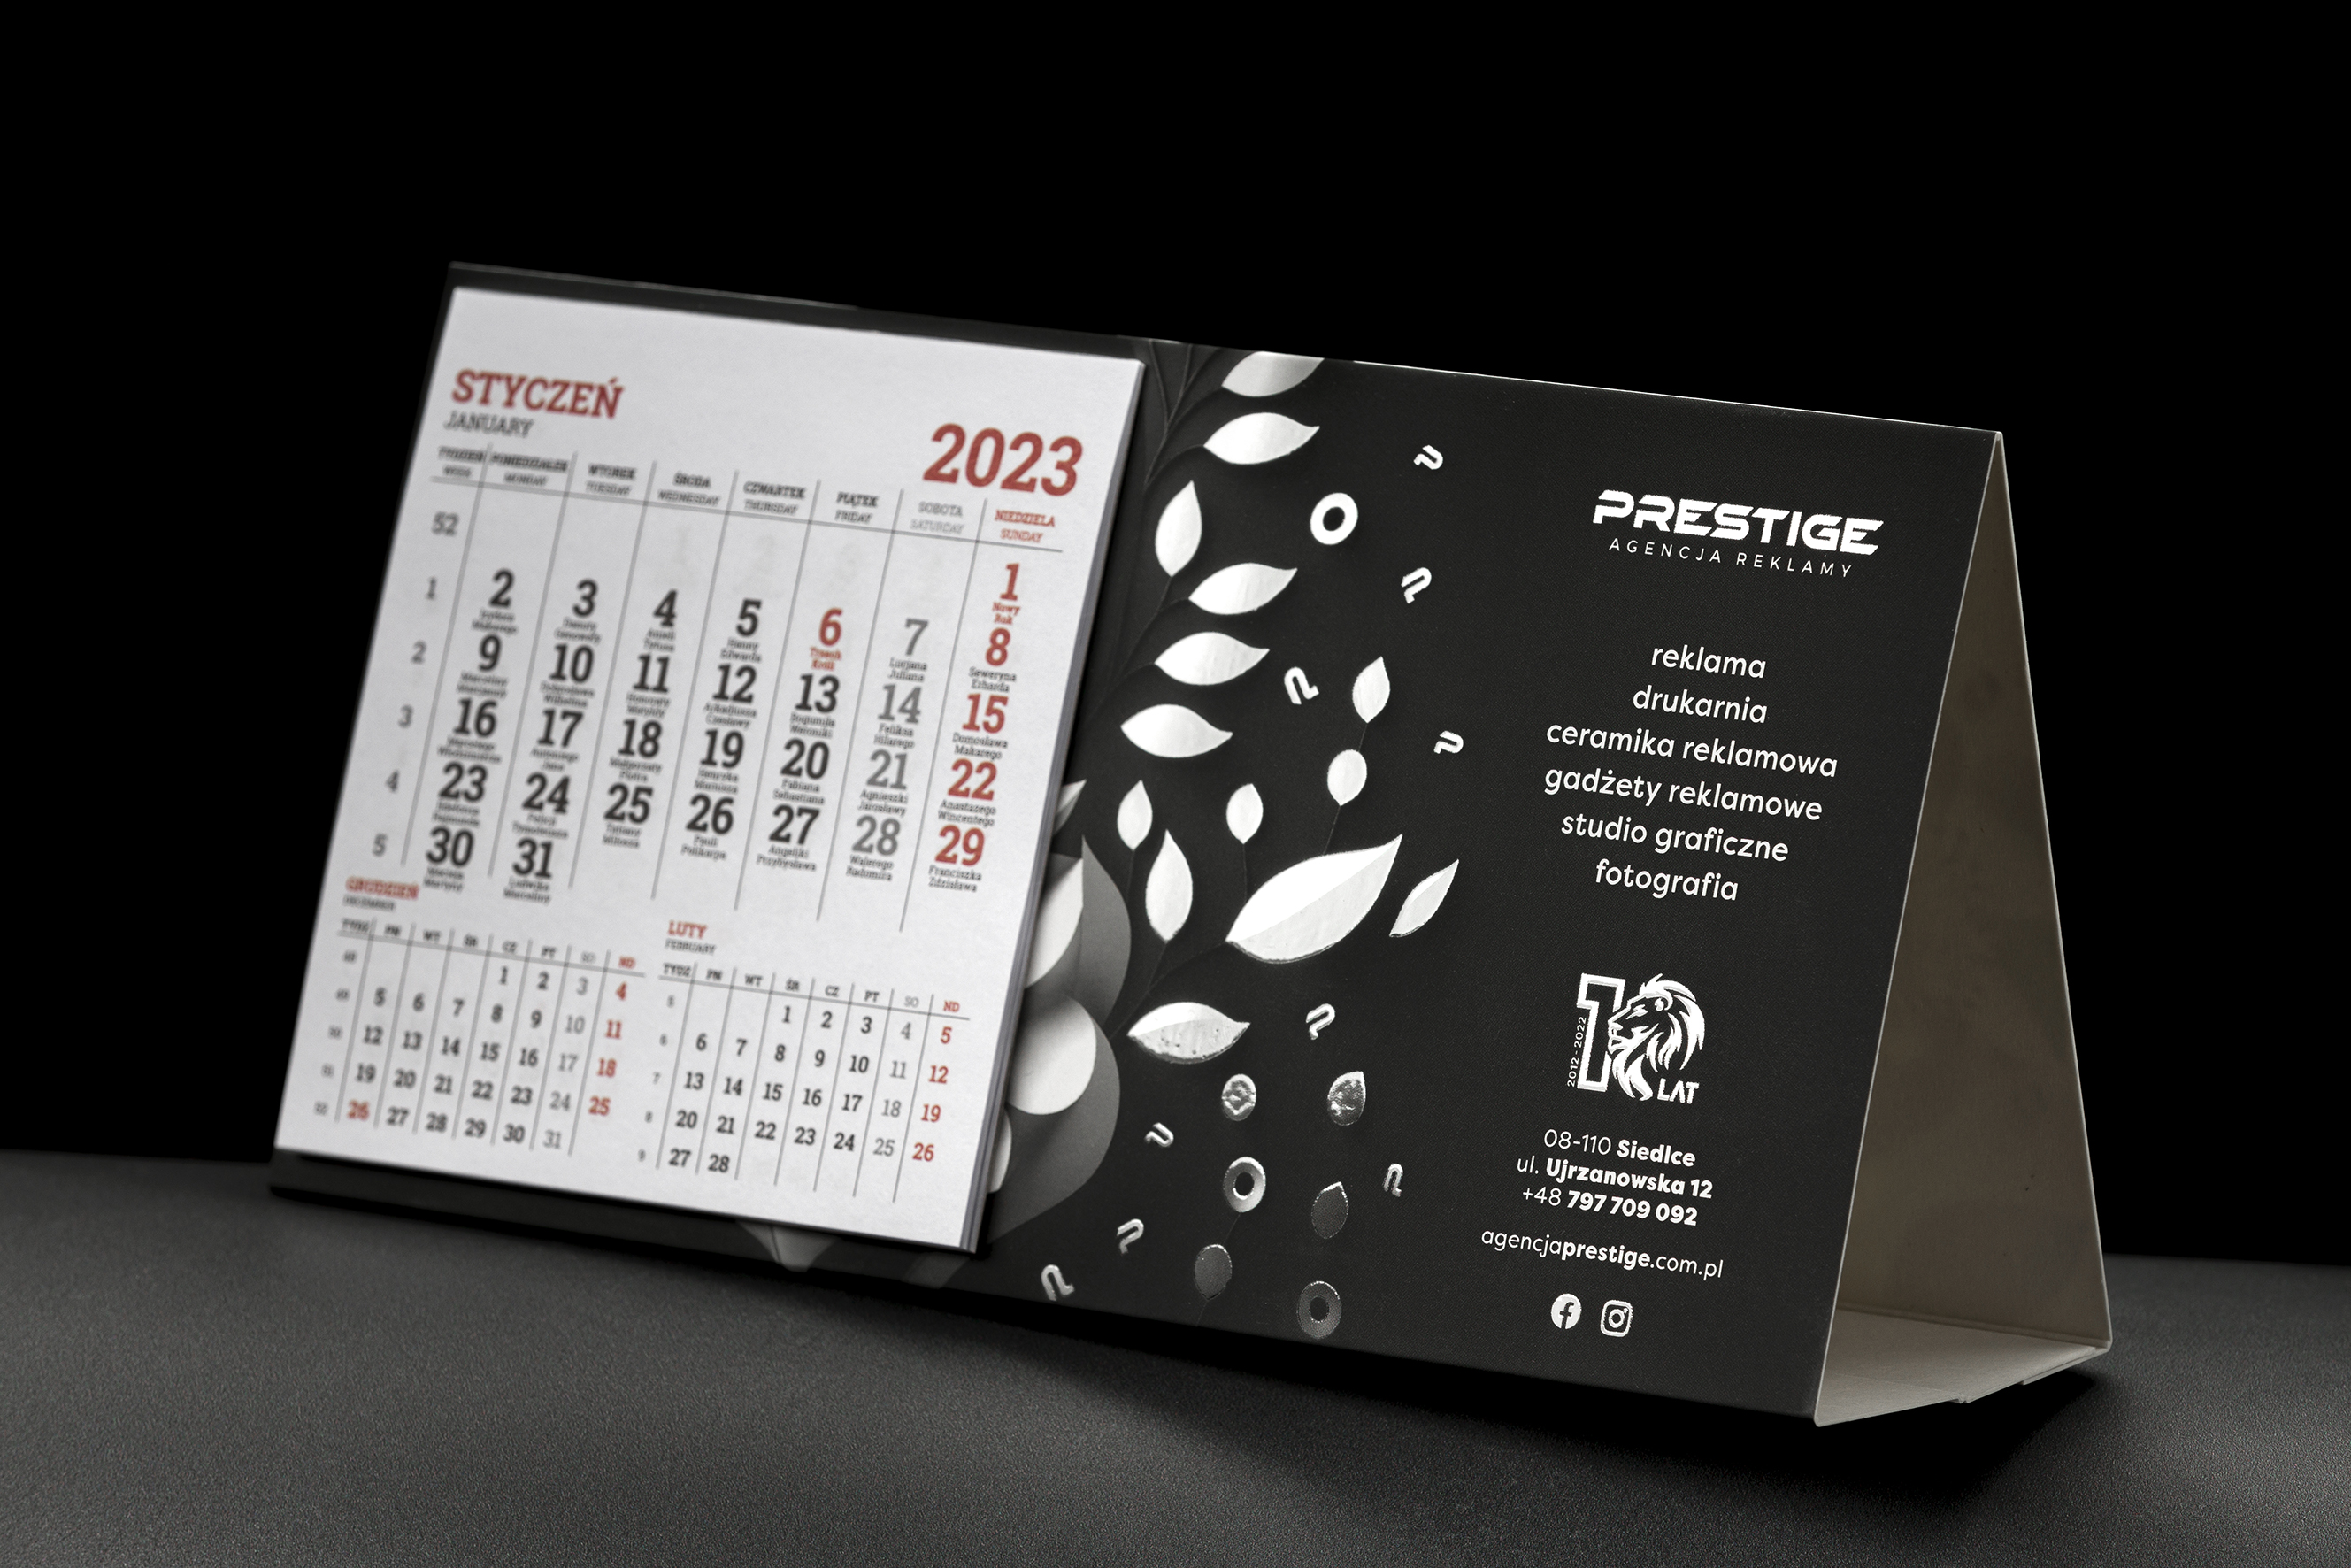 Agencja Reklamy Prestige, Kalendarz biurkowy - 2023